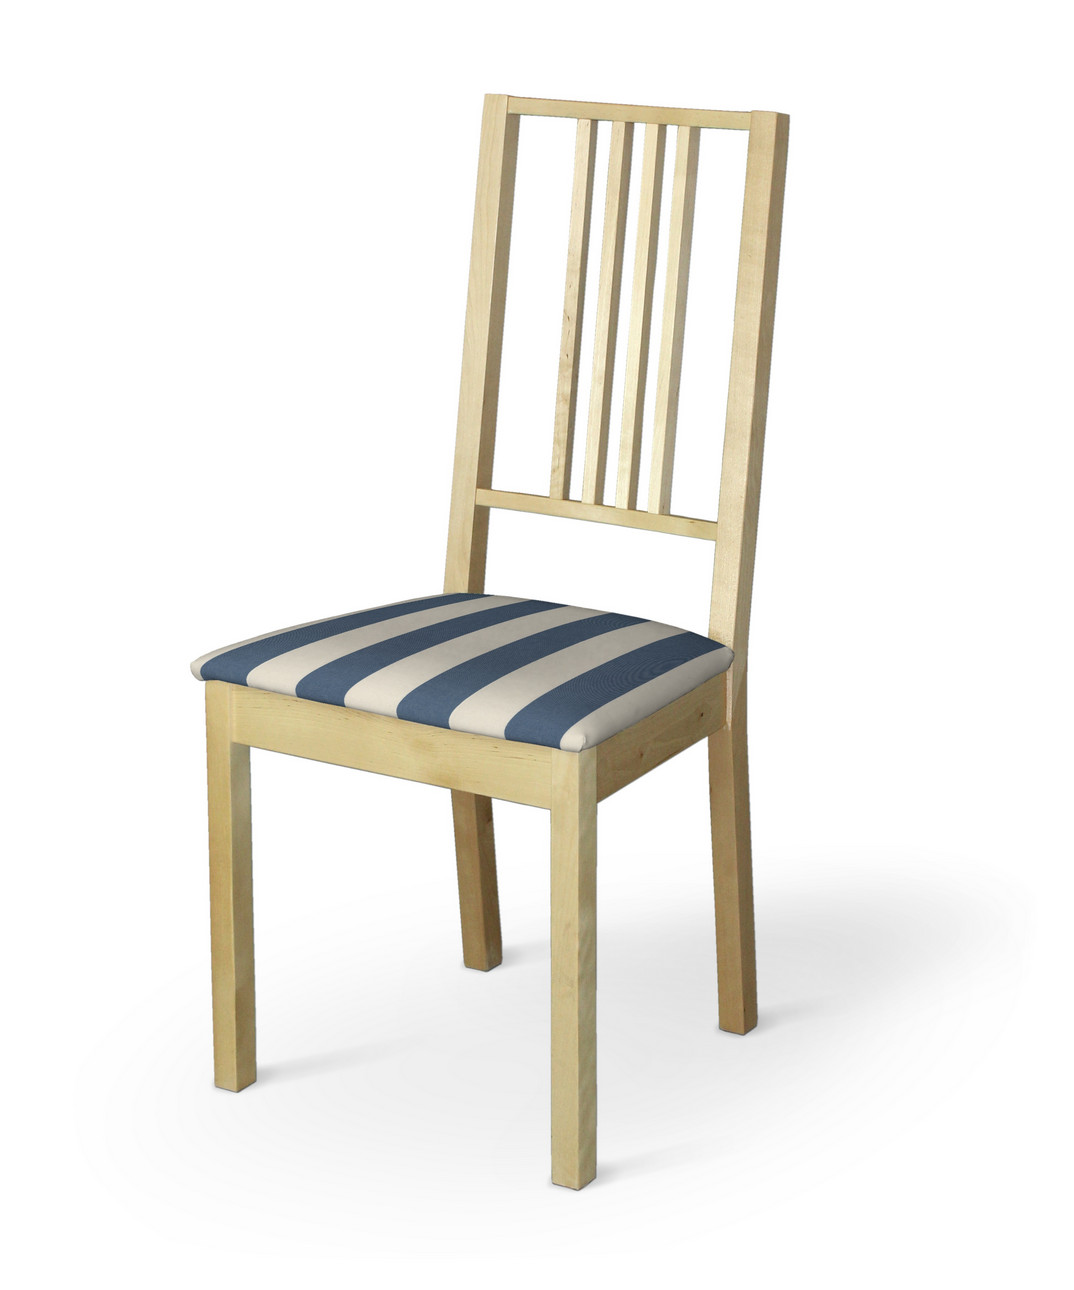 Dekoria Potah na sedák židle Börje, modré a bílé svislé pruhy, potah sedák židle Börje, Quadro, 143-90